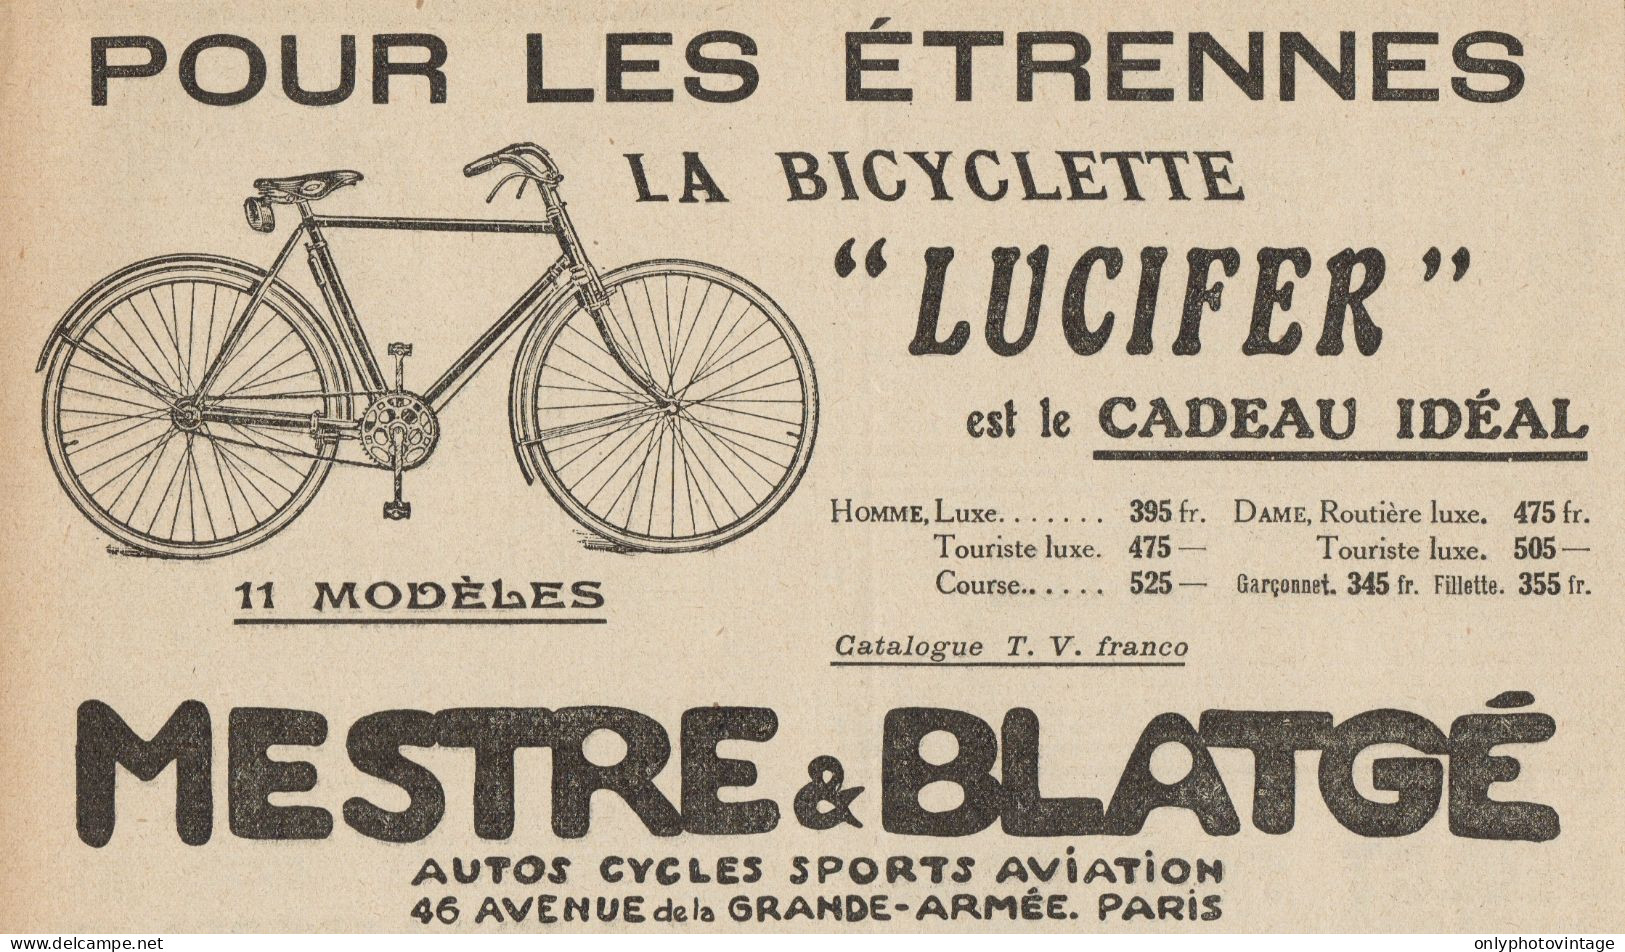 Bicyclette LUCIFER - Mestre & Blatgé - Pubblicità D'epoca - 1921 Old Ad - Advertising